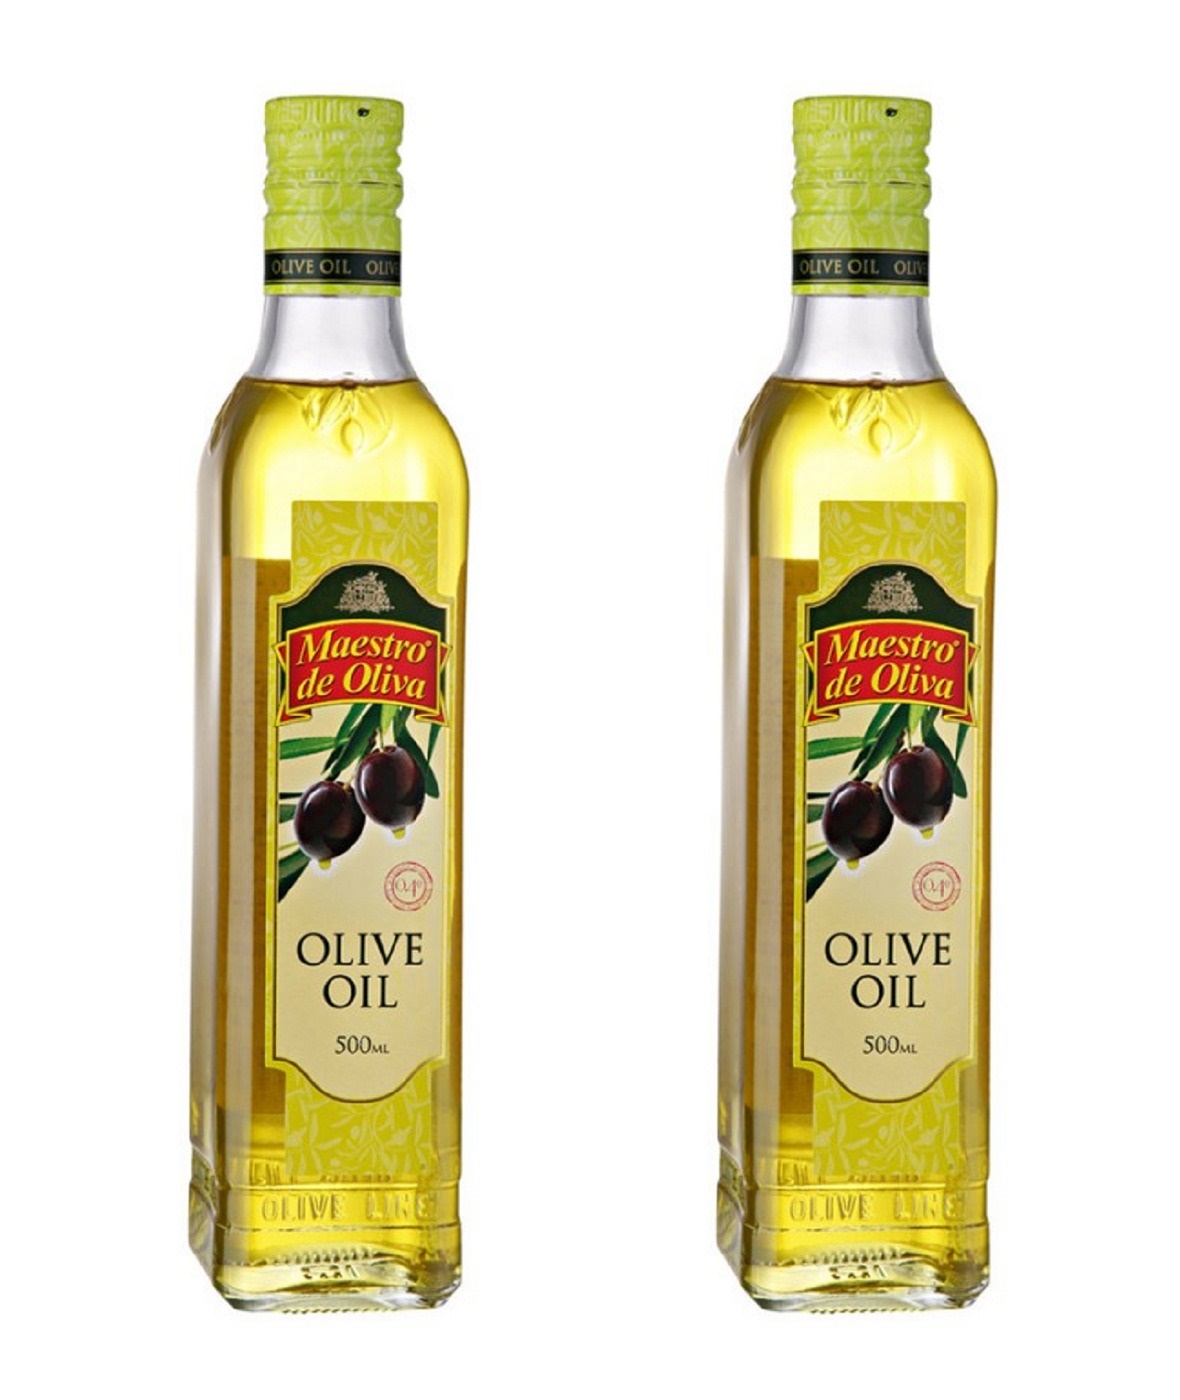 Для жарки лучше рафинированное или нерафинированное масло. Масло оливковое Maestro de Oliva Extra Virgin нерафинированное, 1 л. Olive Oil нерафинированное масло оливковое. Масло оливковое нерафинированное первого холодного отжима. Olive Oil масло оливковое рафинированное и нерафинированное.